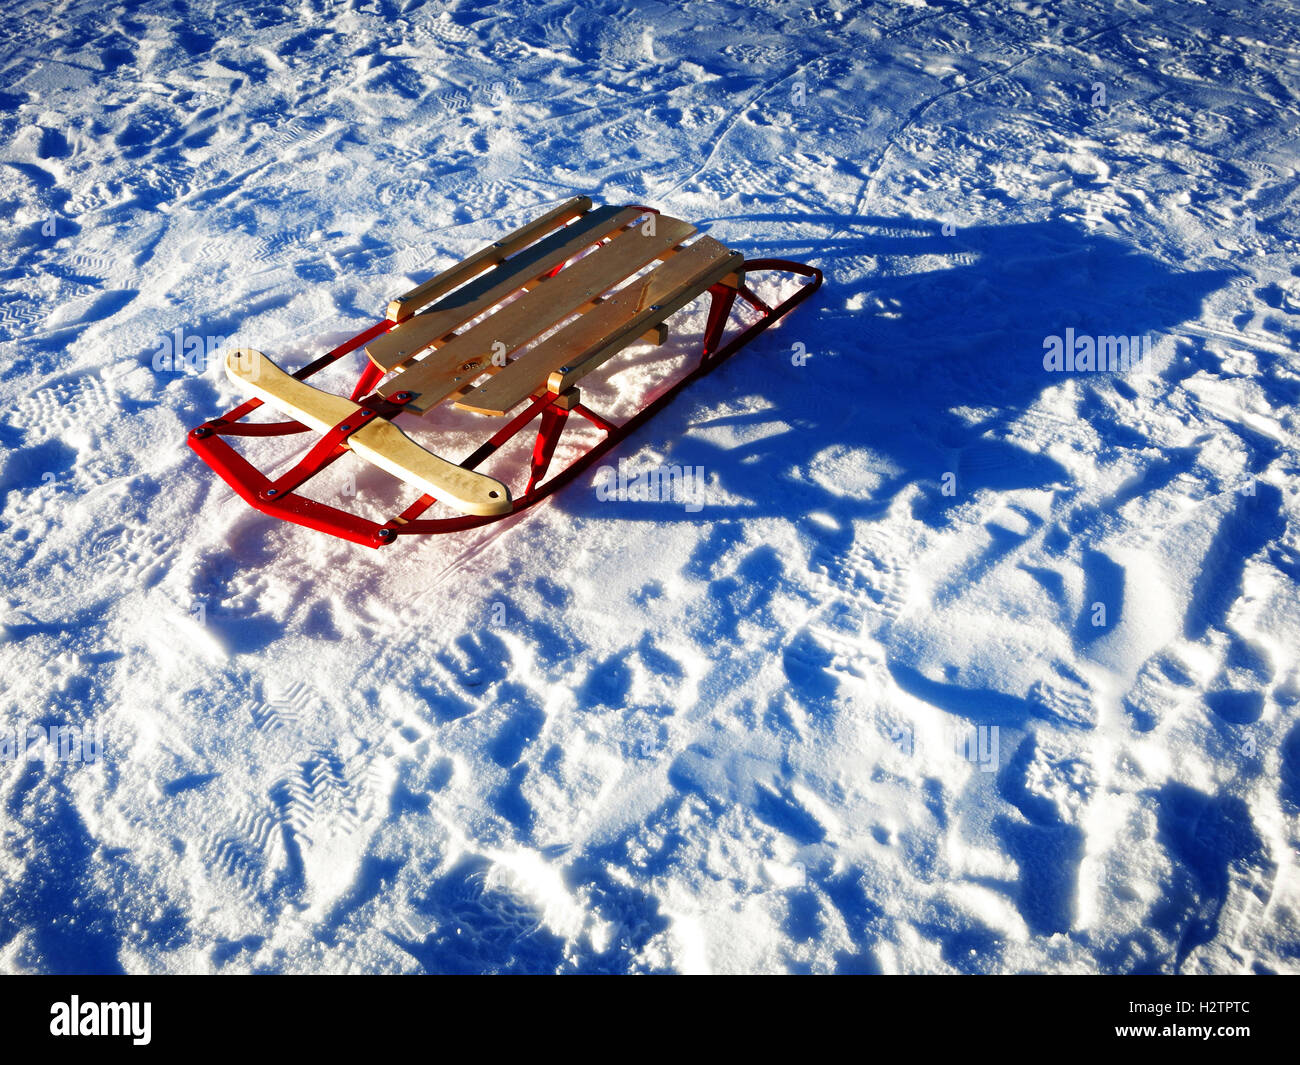 Sledding in snow fresh powder tracks Stock Photo